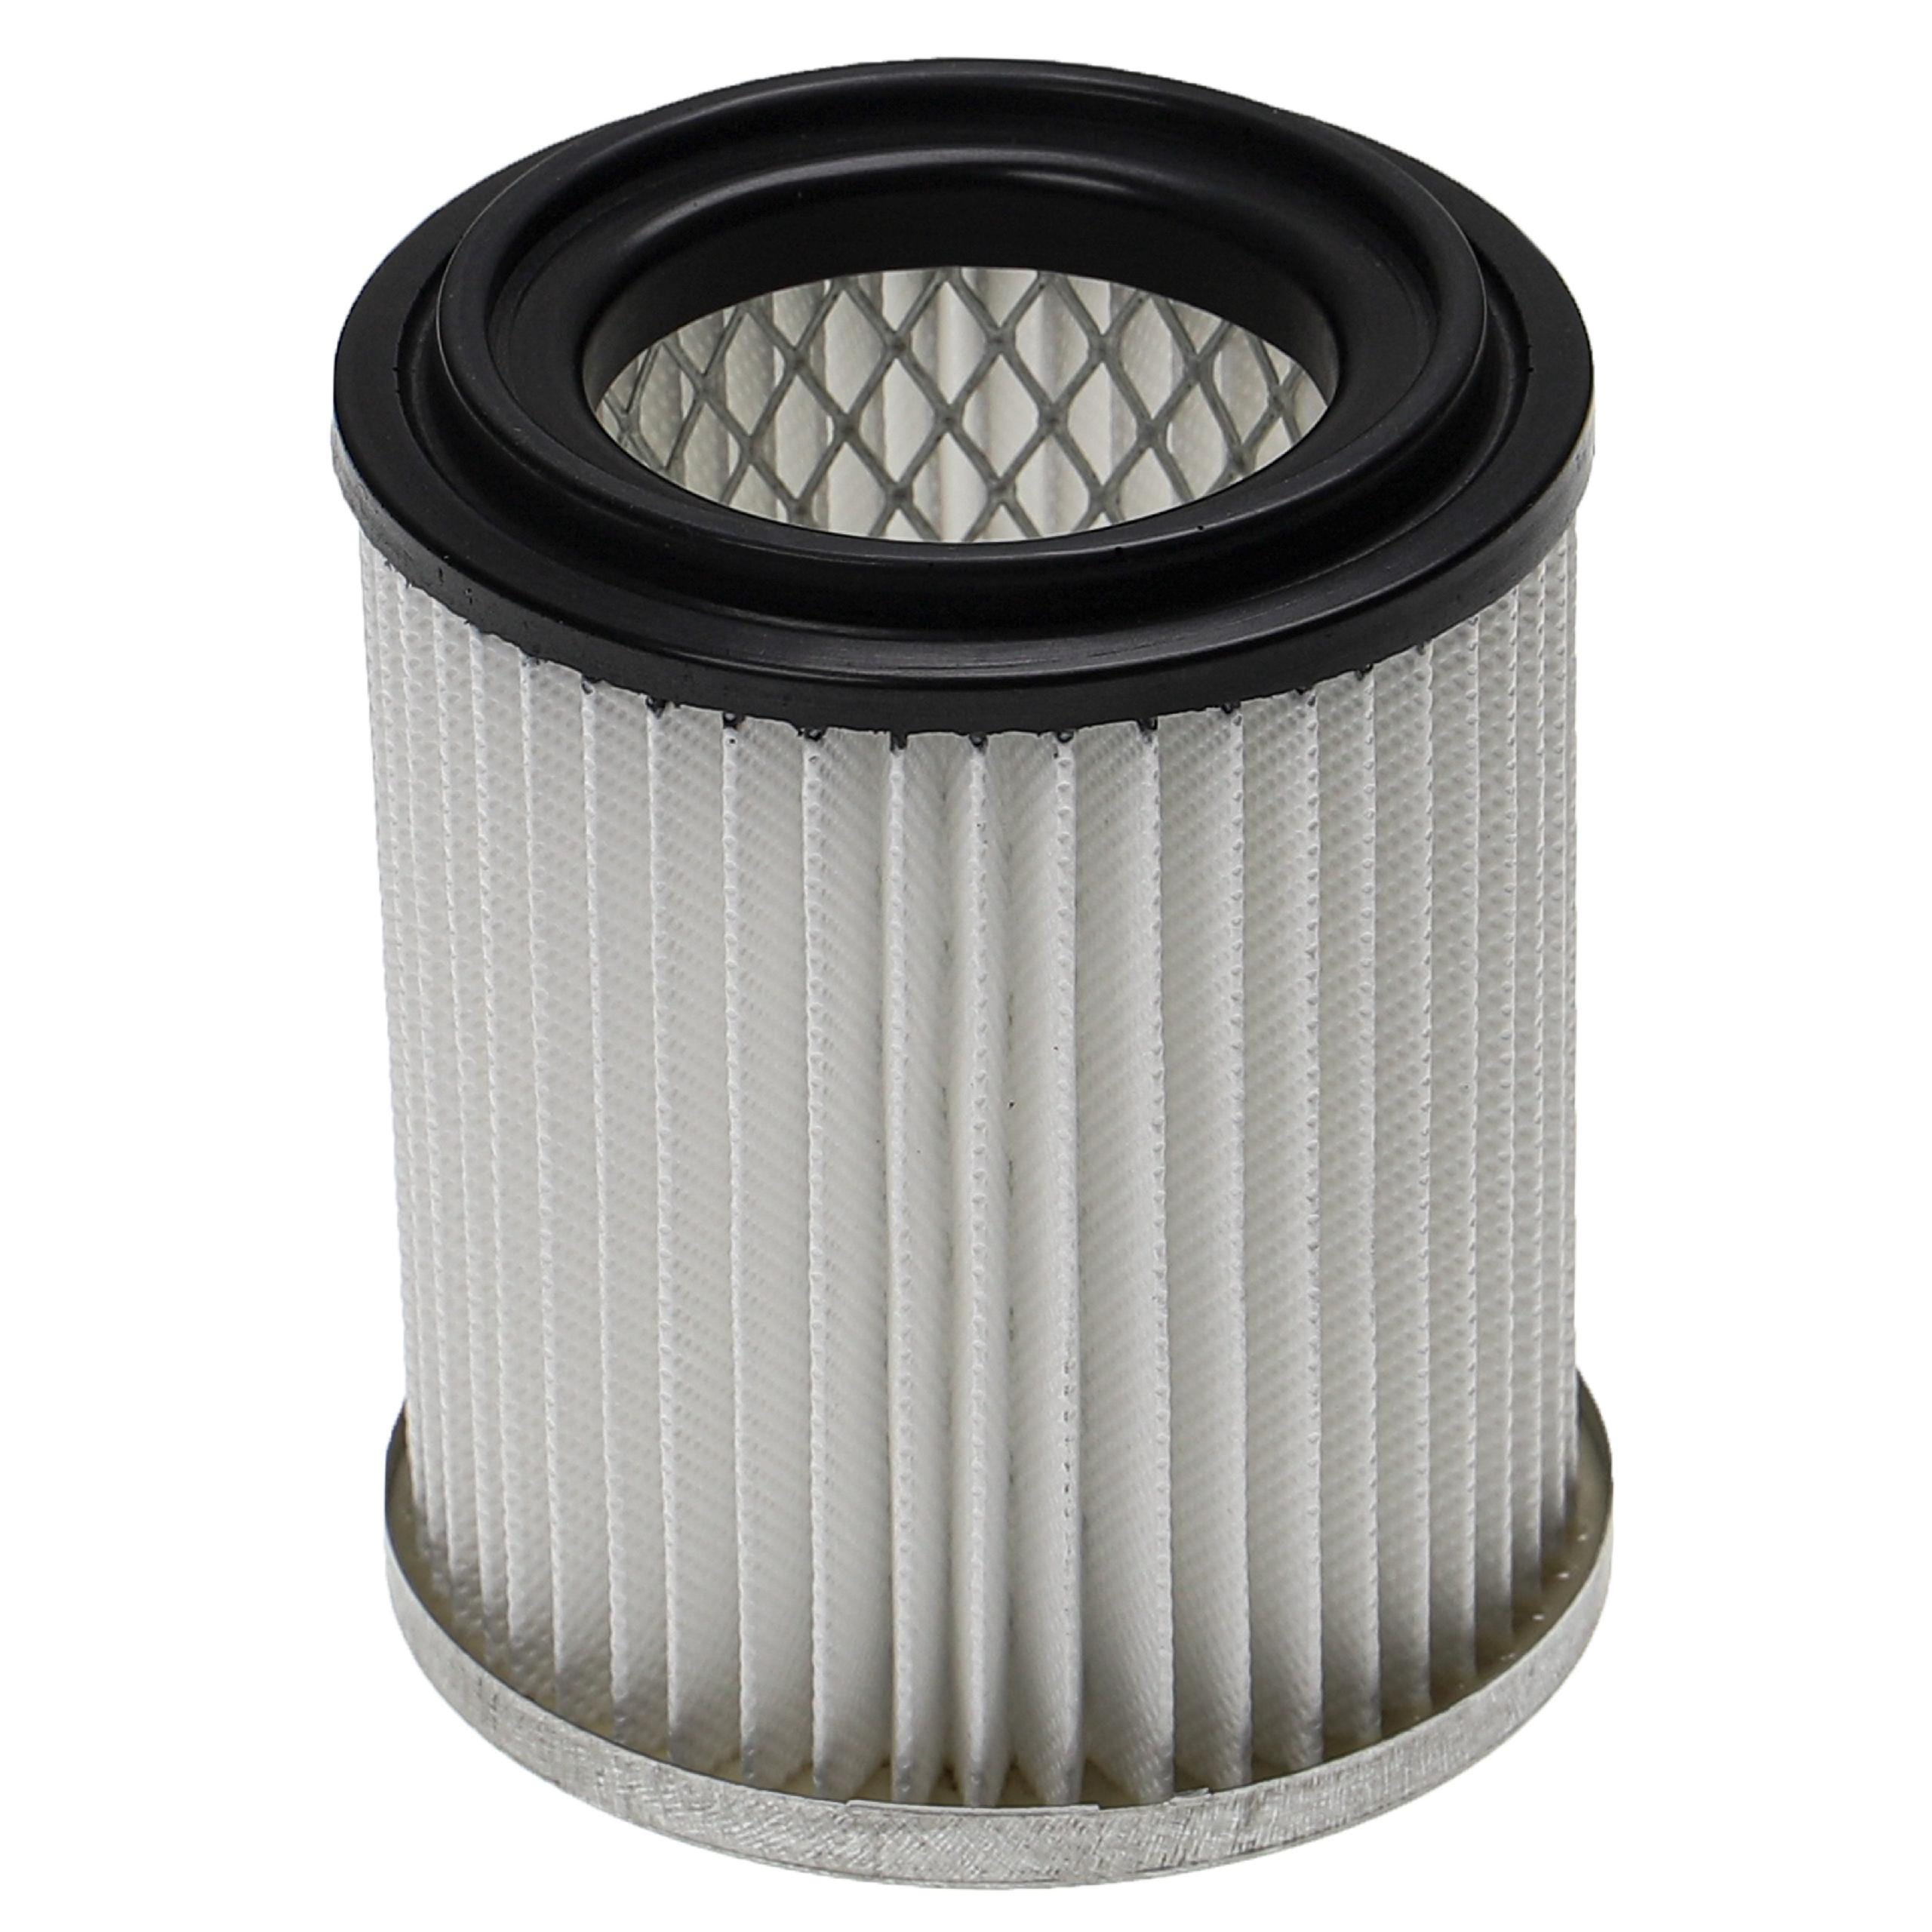 Vhbw filtro compatibile con Grafner 20l A15743, 20 L - A 17307 / 17534  aspiracenere - filtro HEPA anallergico